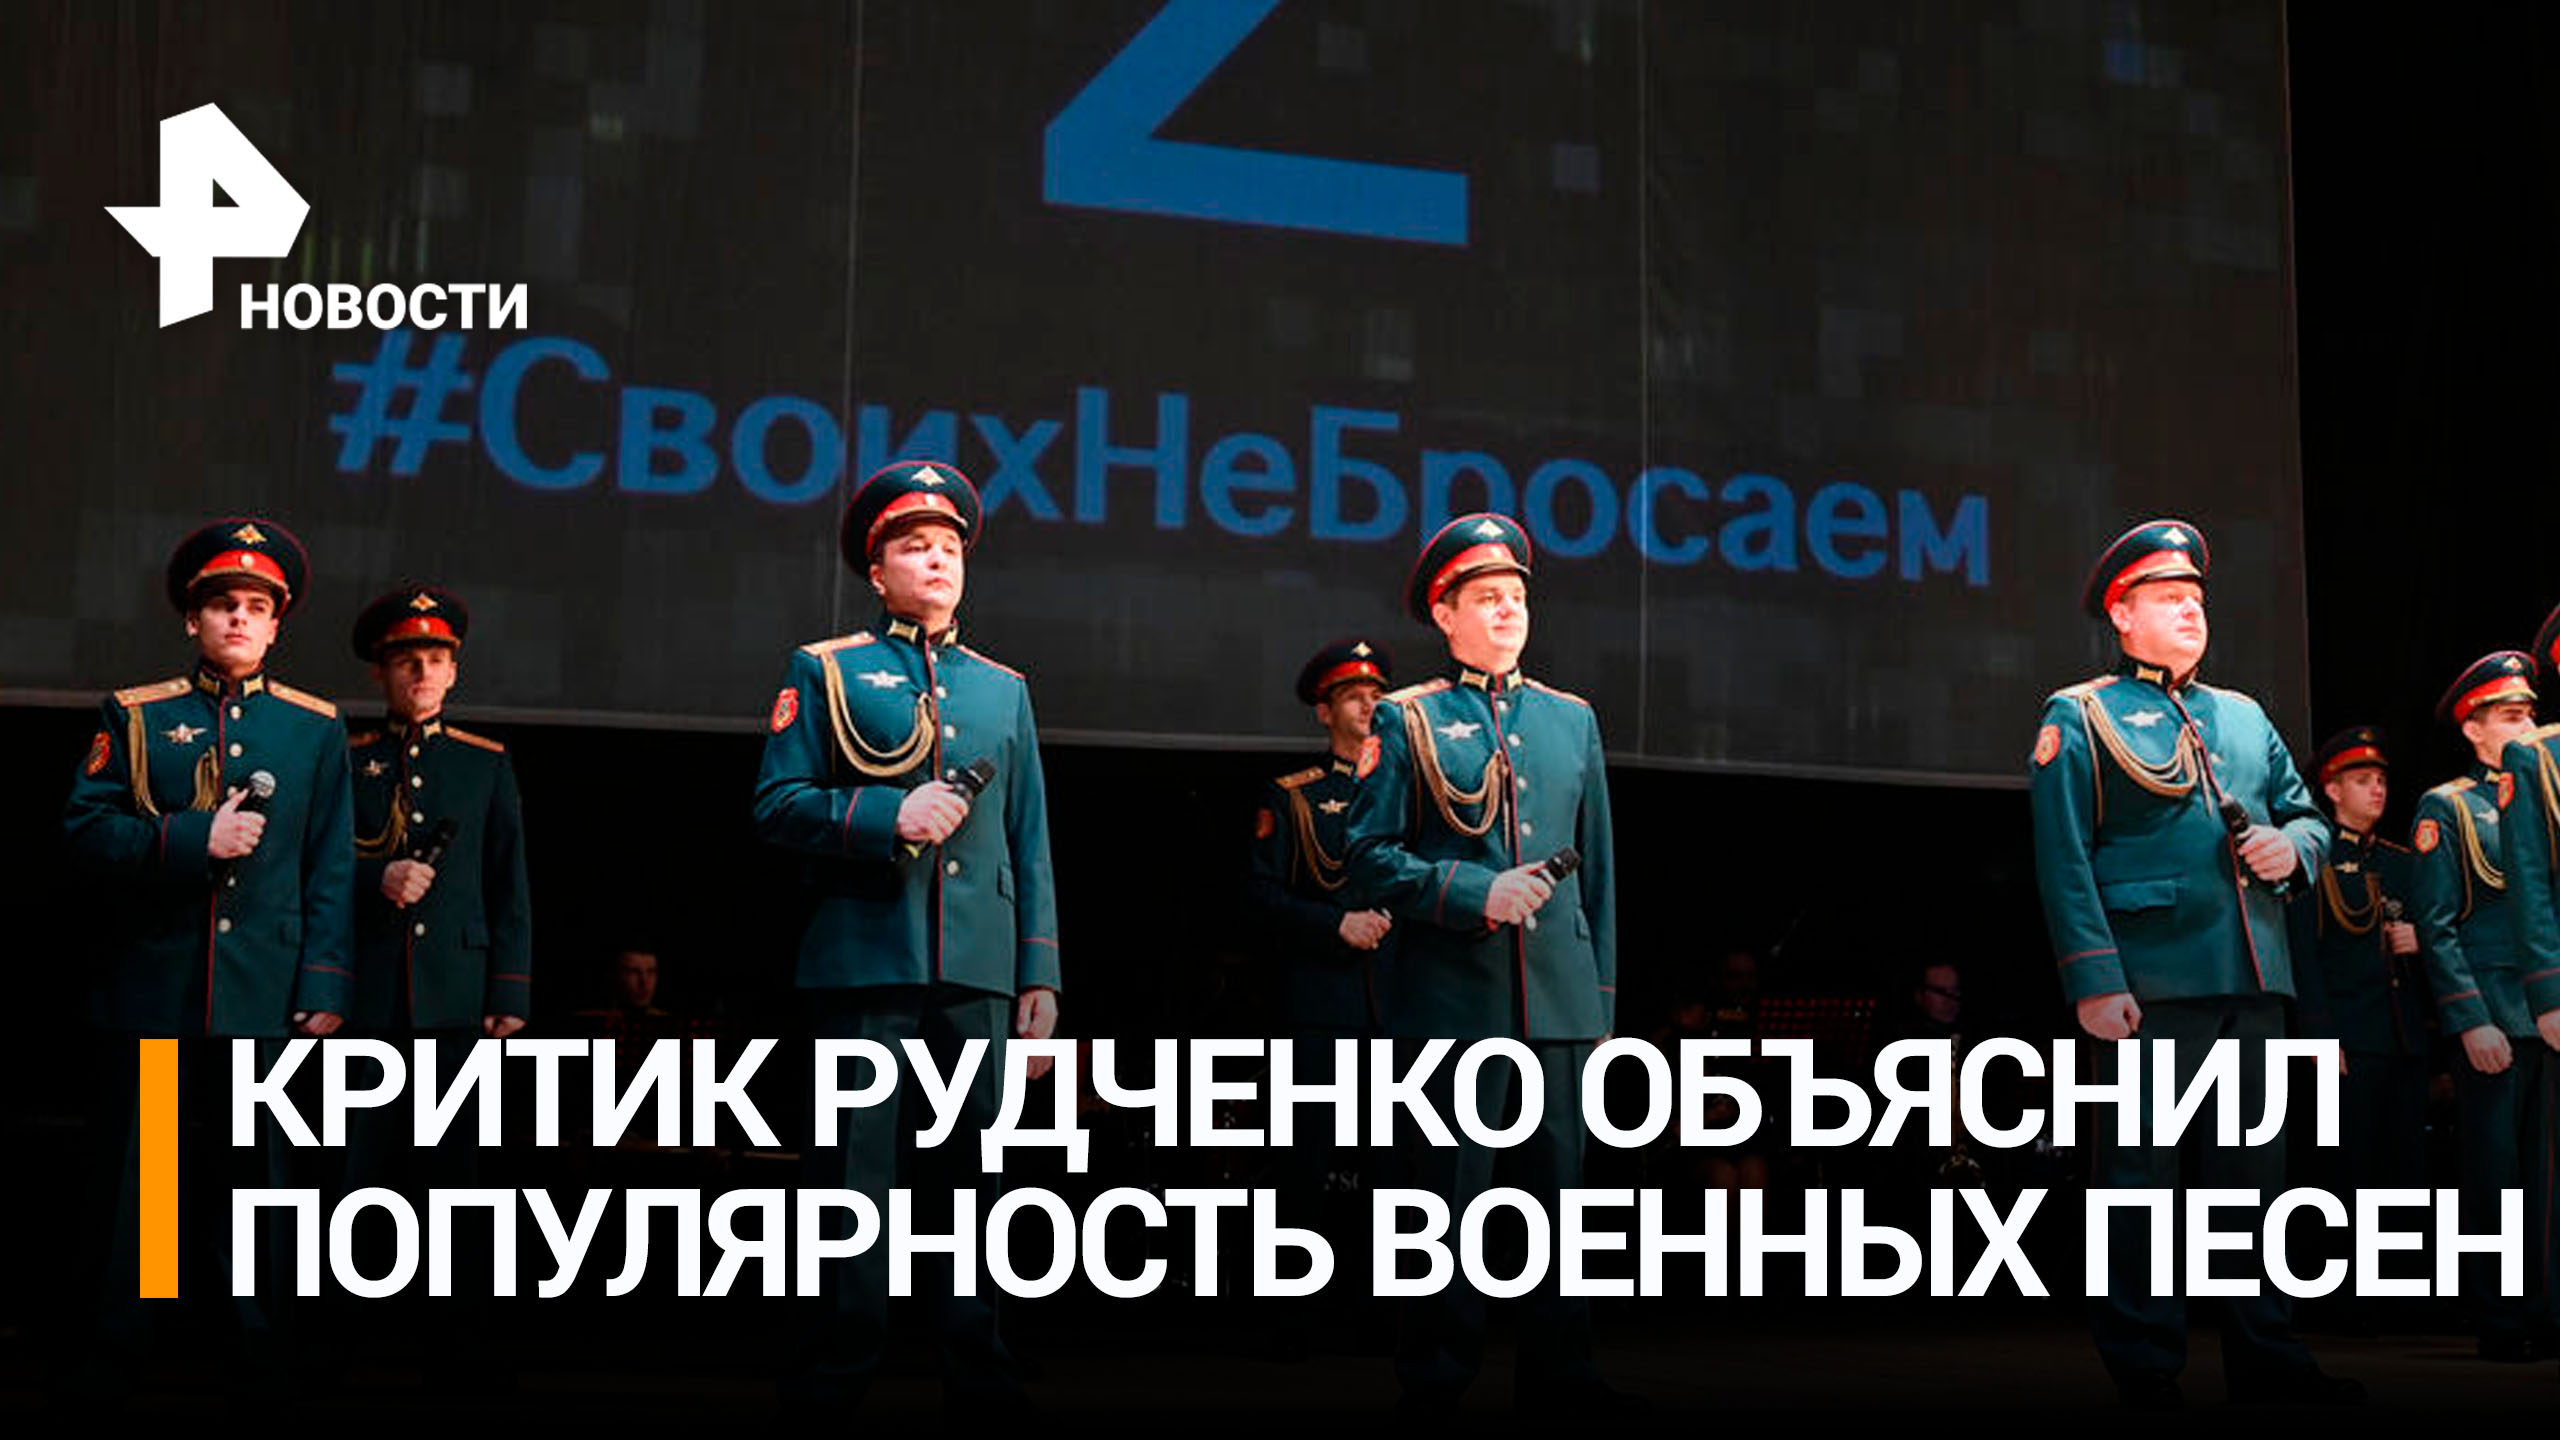 Критик объяснил популярность военных песен: "Это близко людям" / РЕН Новости